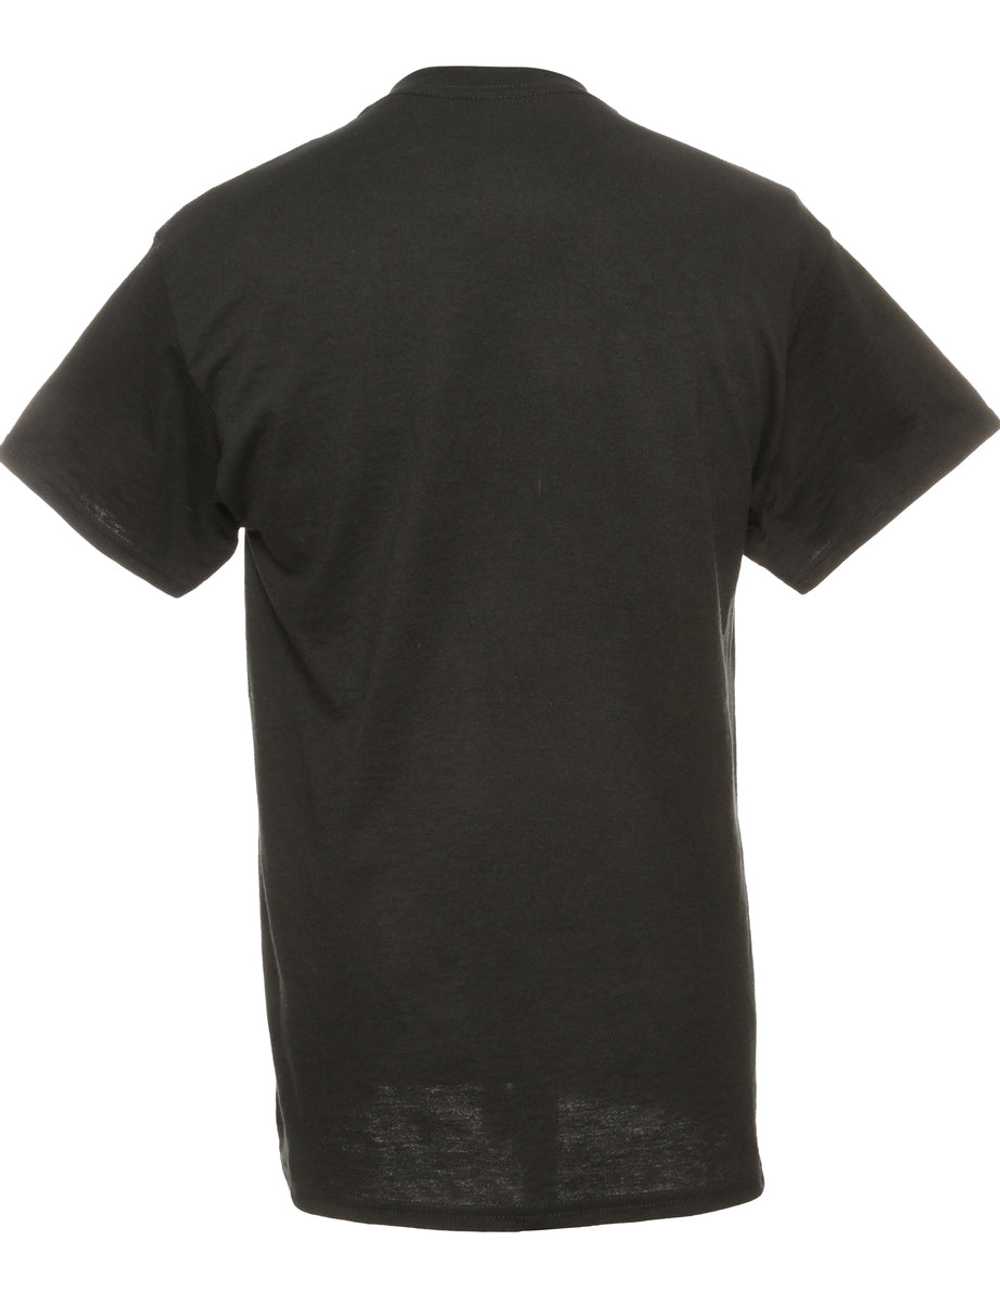 Black Gildan Printed T-shirt - M - image 2